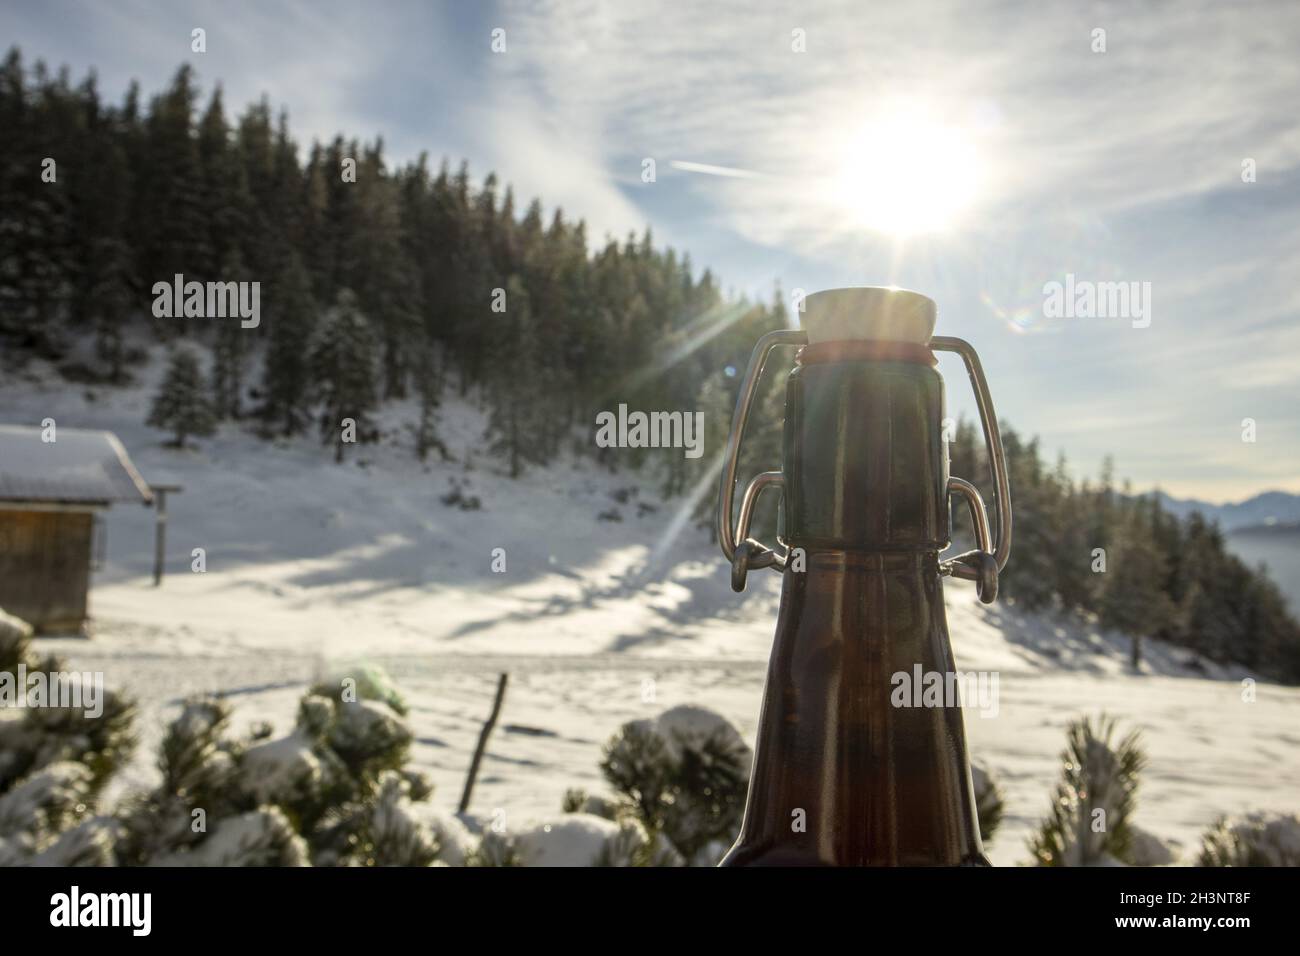 Beer bottle outdoors in winter Stock Photo